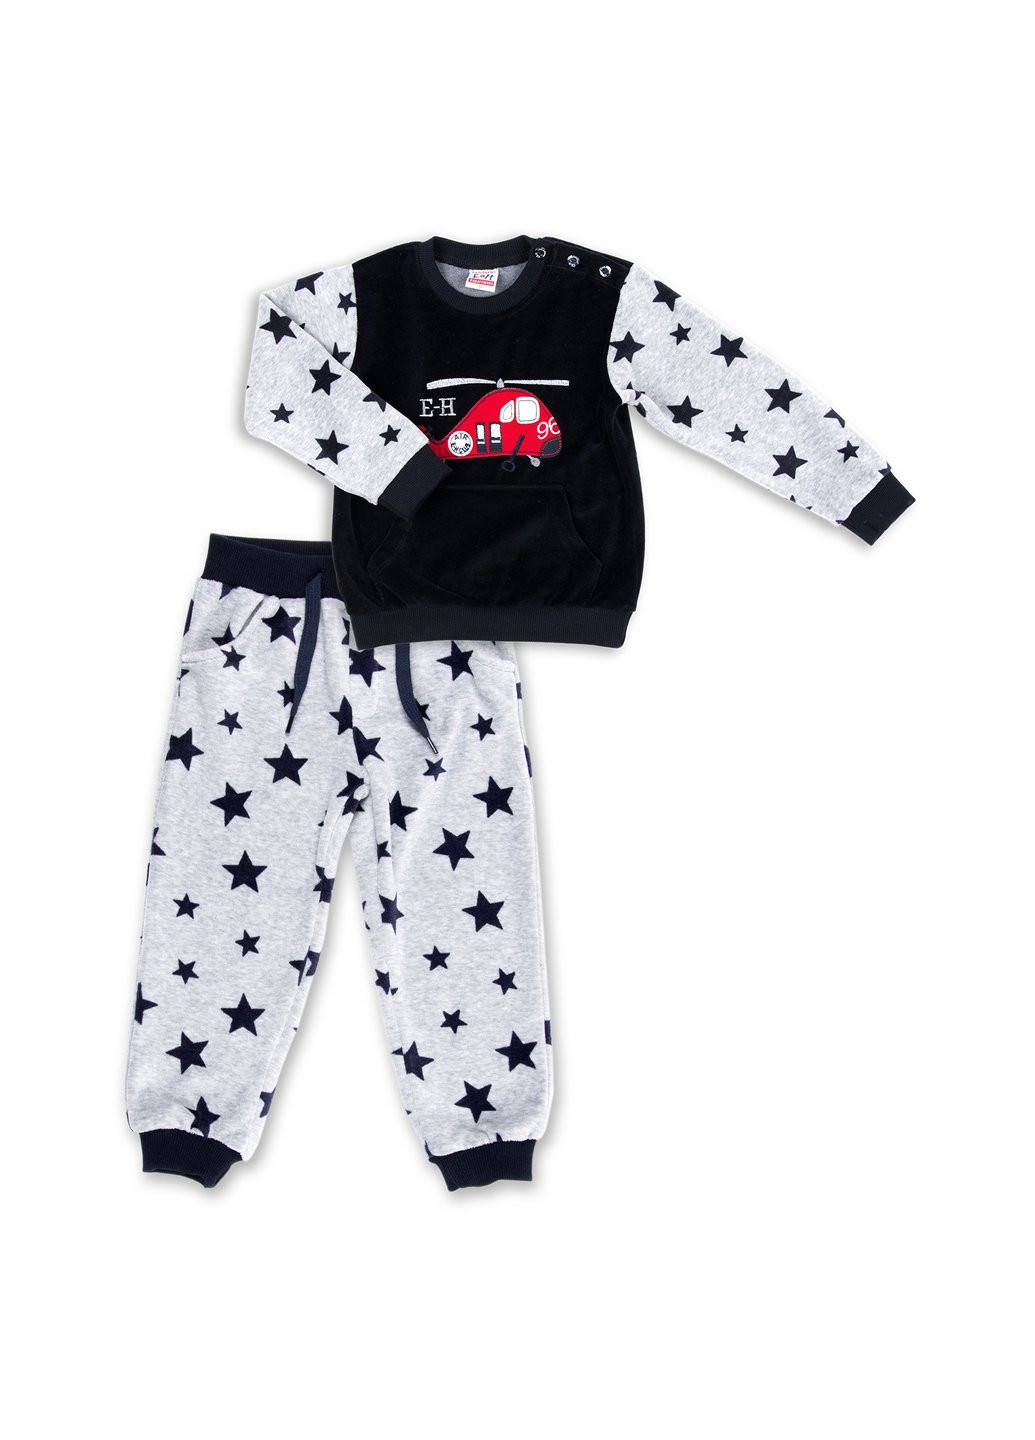 Голубой демисезонный набор детской одежды велюровый с вертолетом и штанишками в звездочку (8113-80/b-dark blue) Breeze